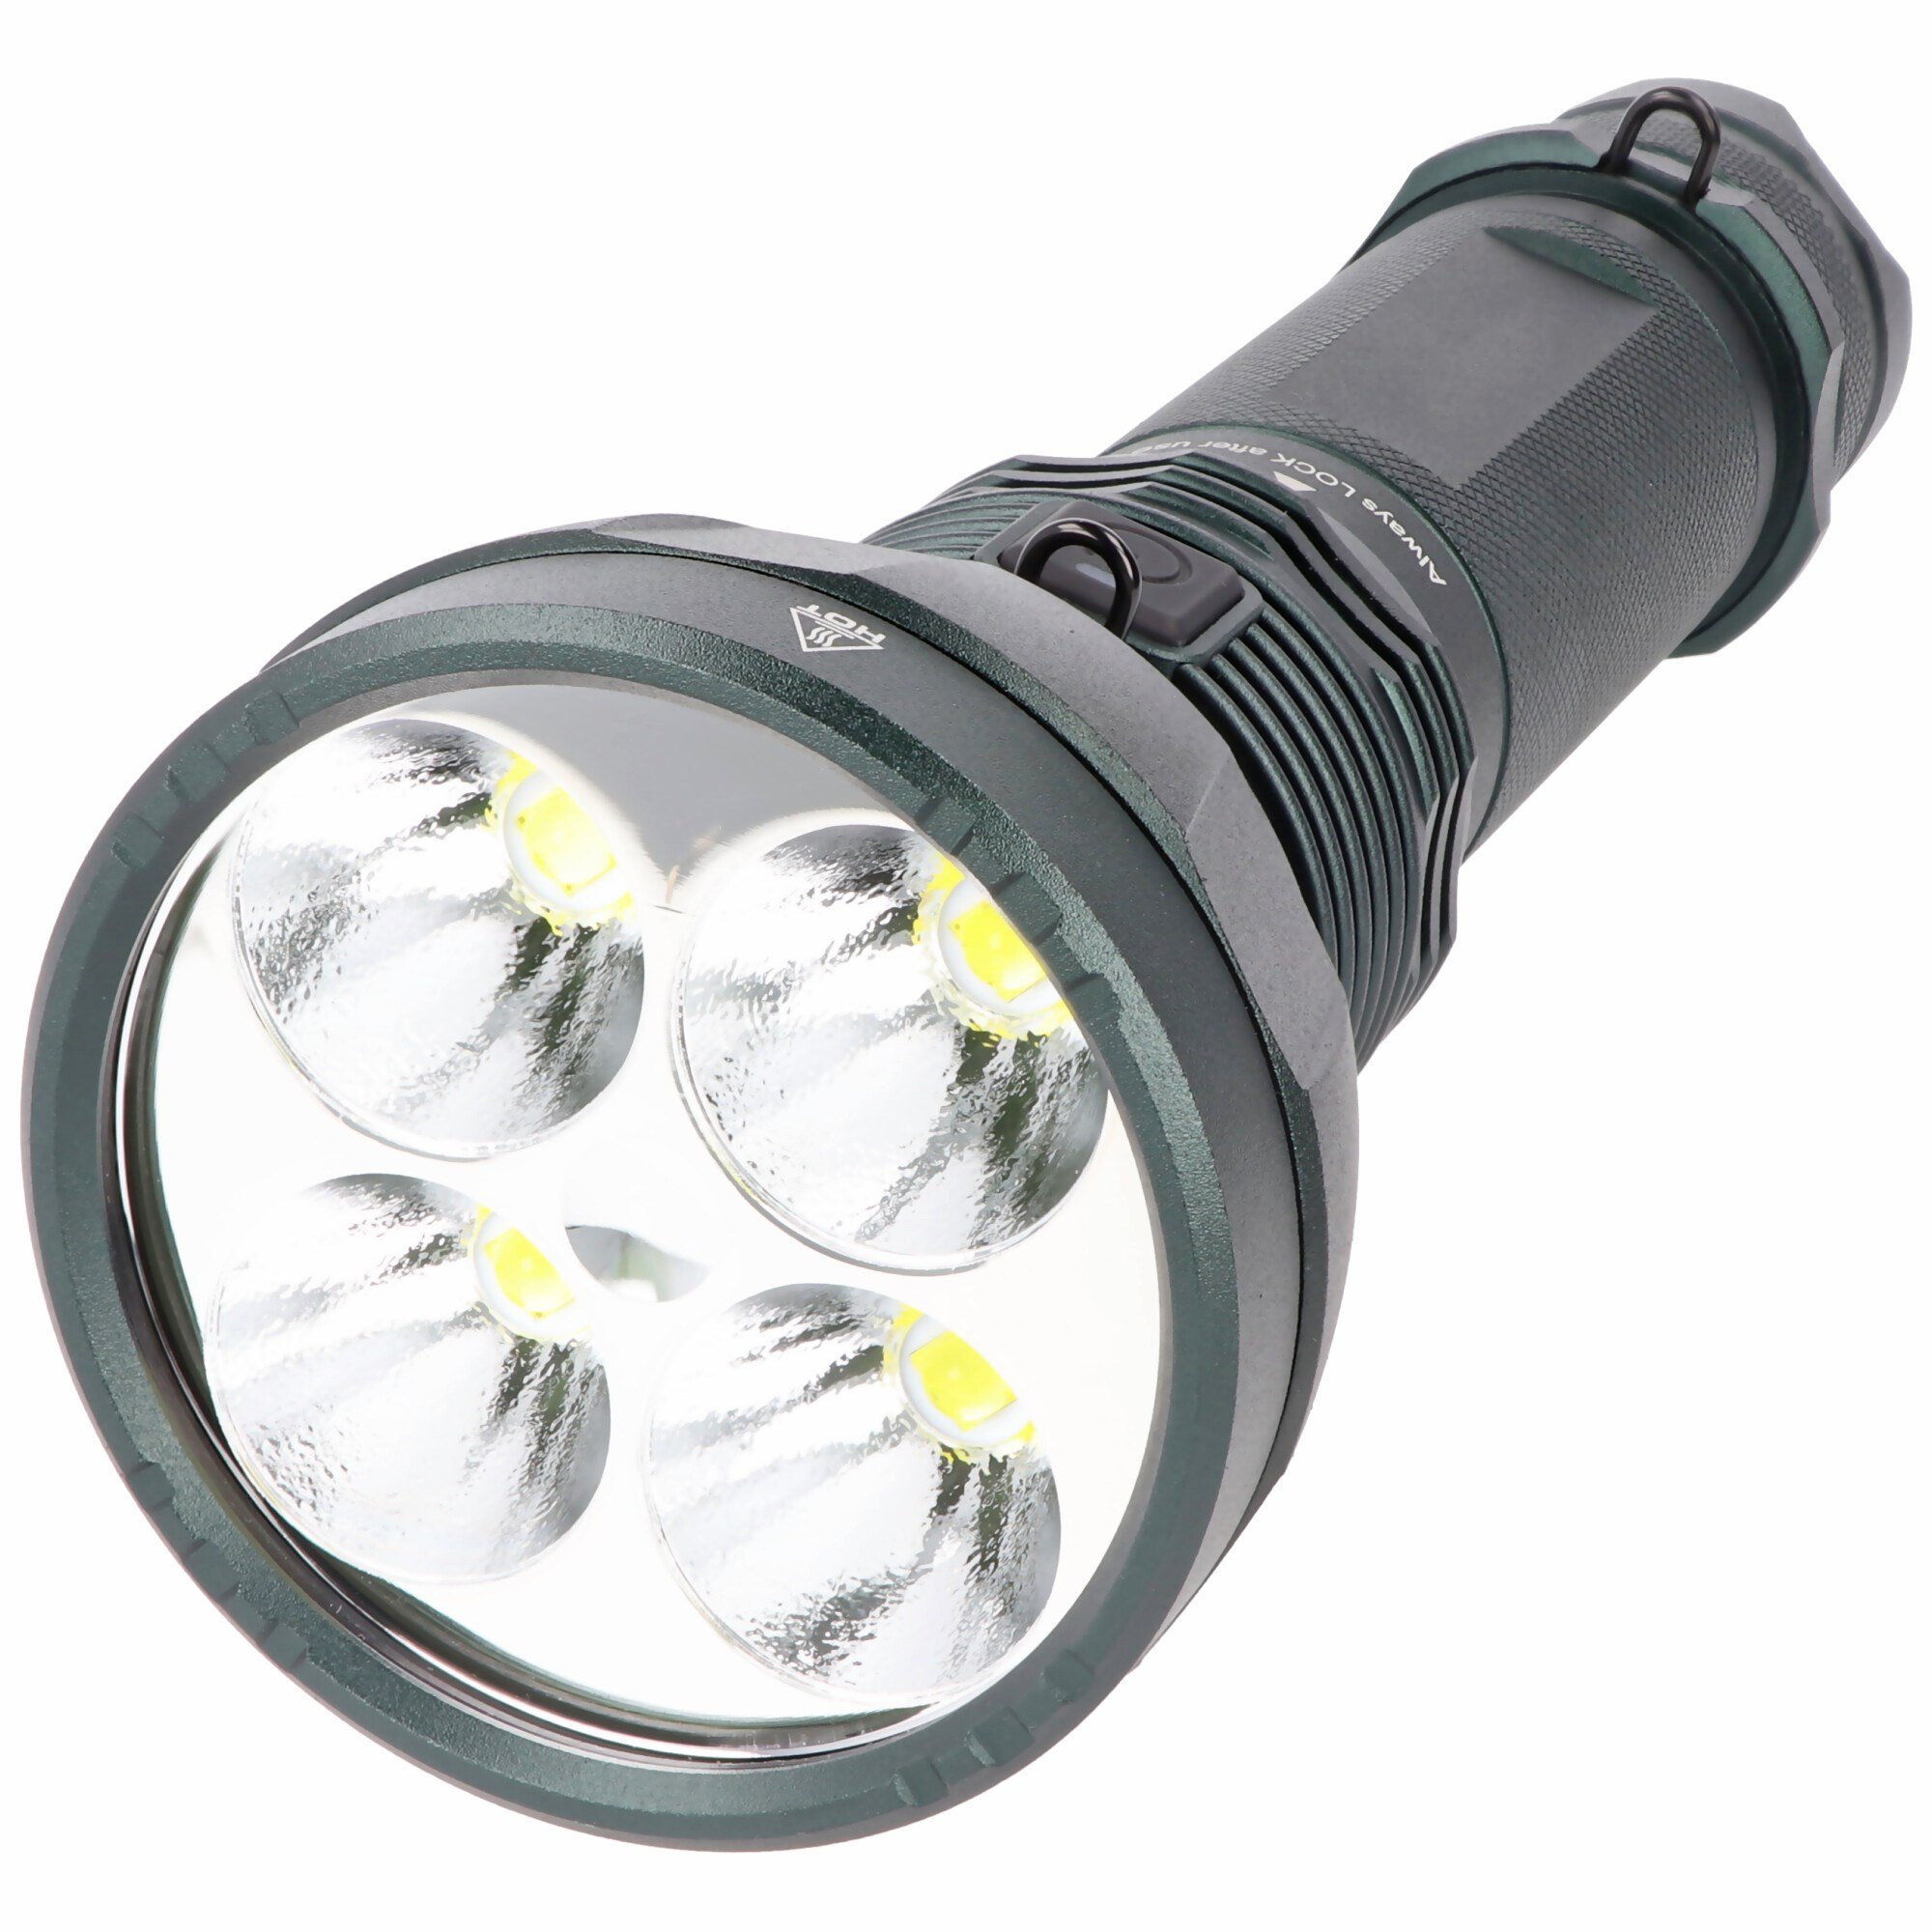 11600 lümen LED el feneri, 525 metreye kadar aydınlatma aralığı ile avcılık  ve hobi için ideal